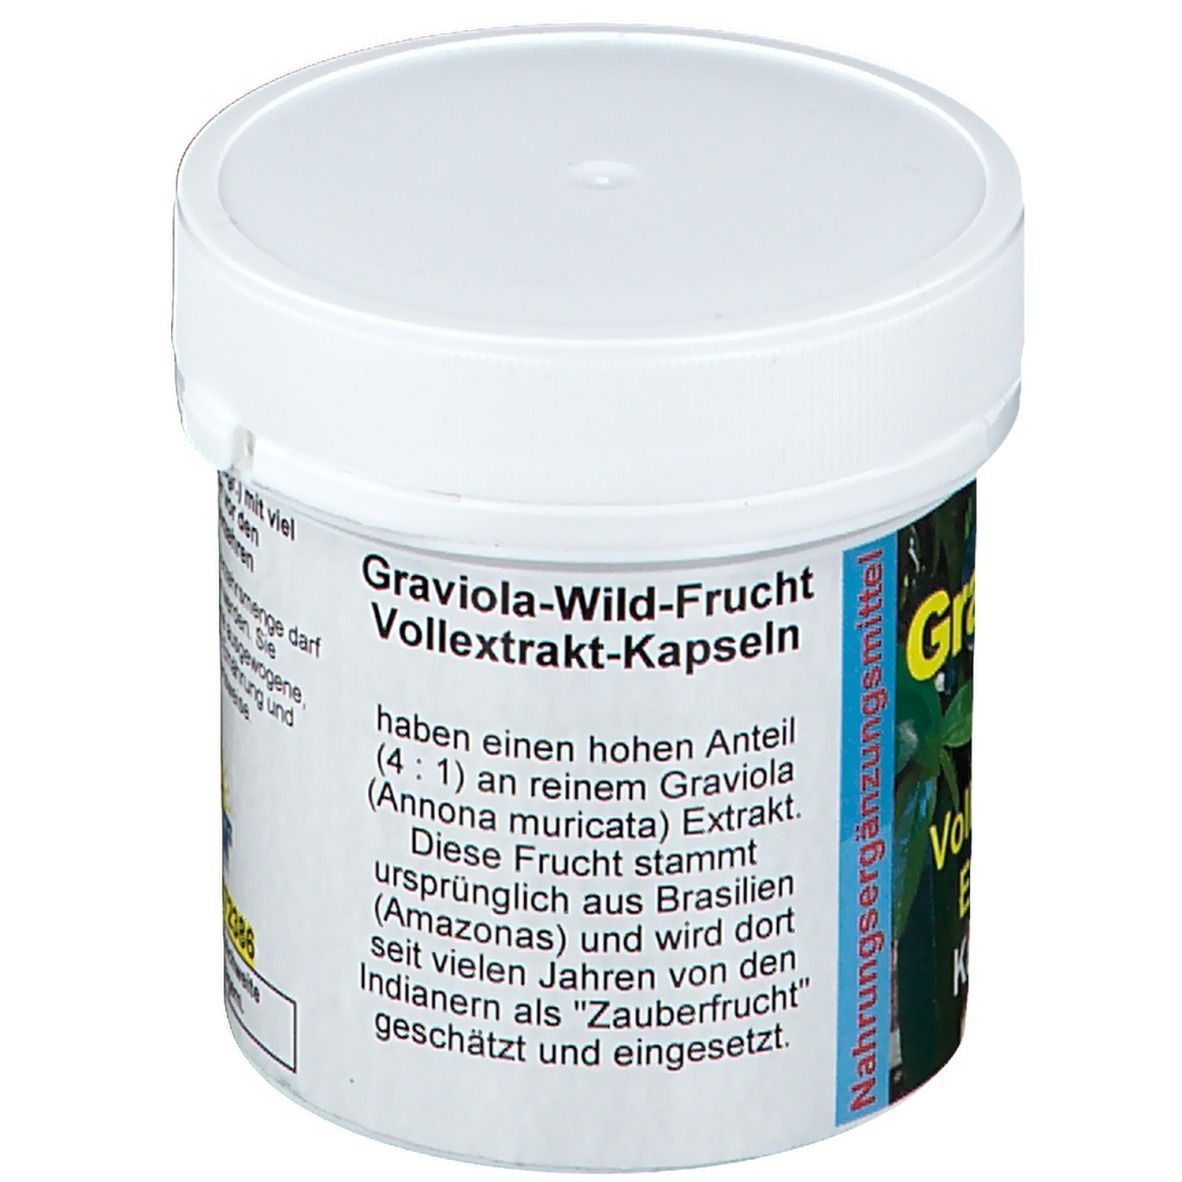 Graviola Voll-Frucht Extrakt 600 mg